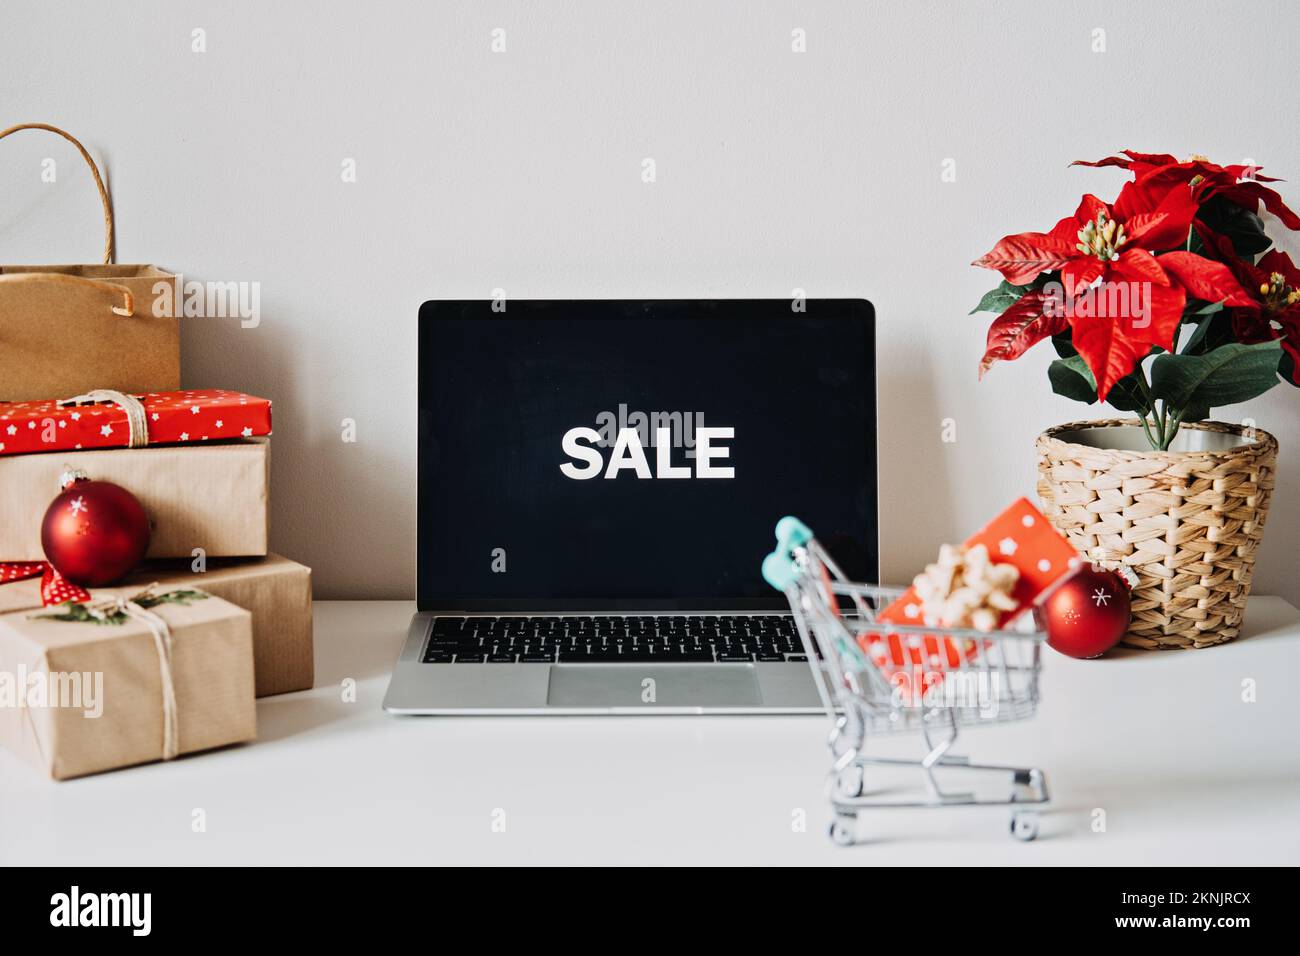 Offener Laptop mit Word Sale auf Display, Poinsettias Weihnachtsblume und Geschenkboxen auf weißem Tisch. Weihnachten online-Shopping, Winter Stockfoto